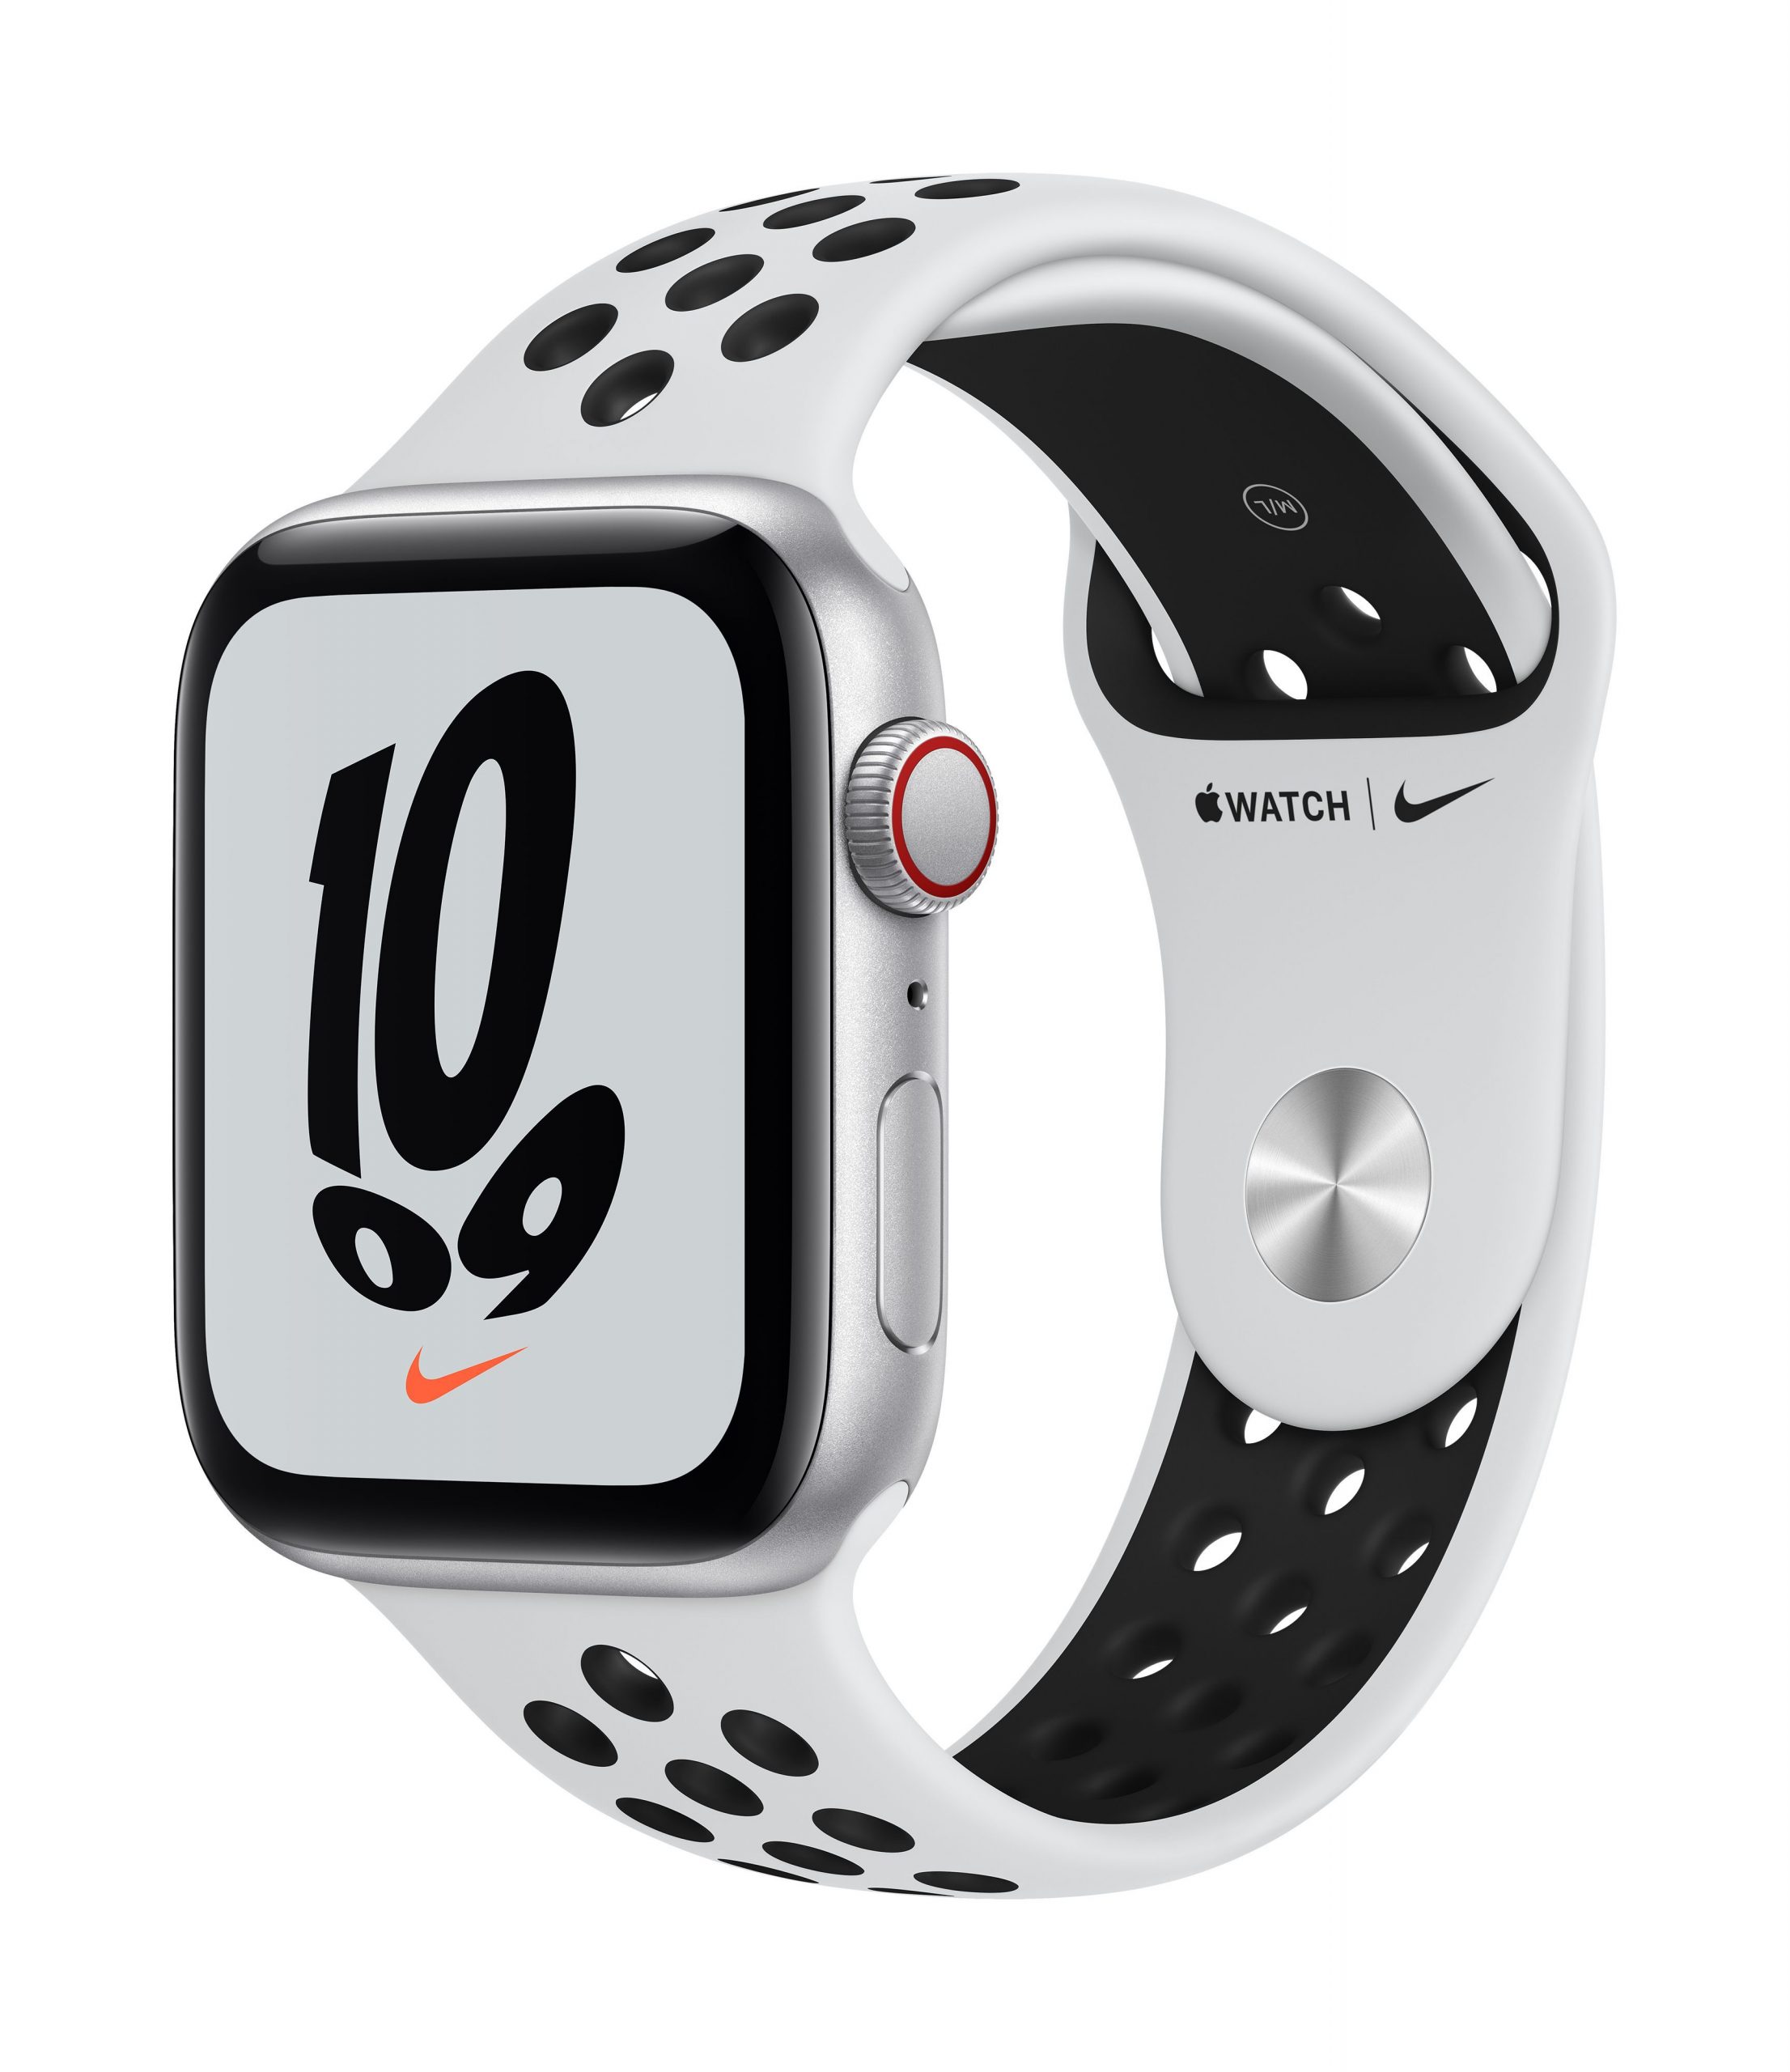 moral Frugal reserva Apple Watch Nike SE - Mecanorba